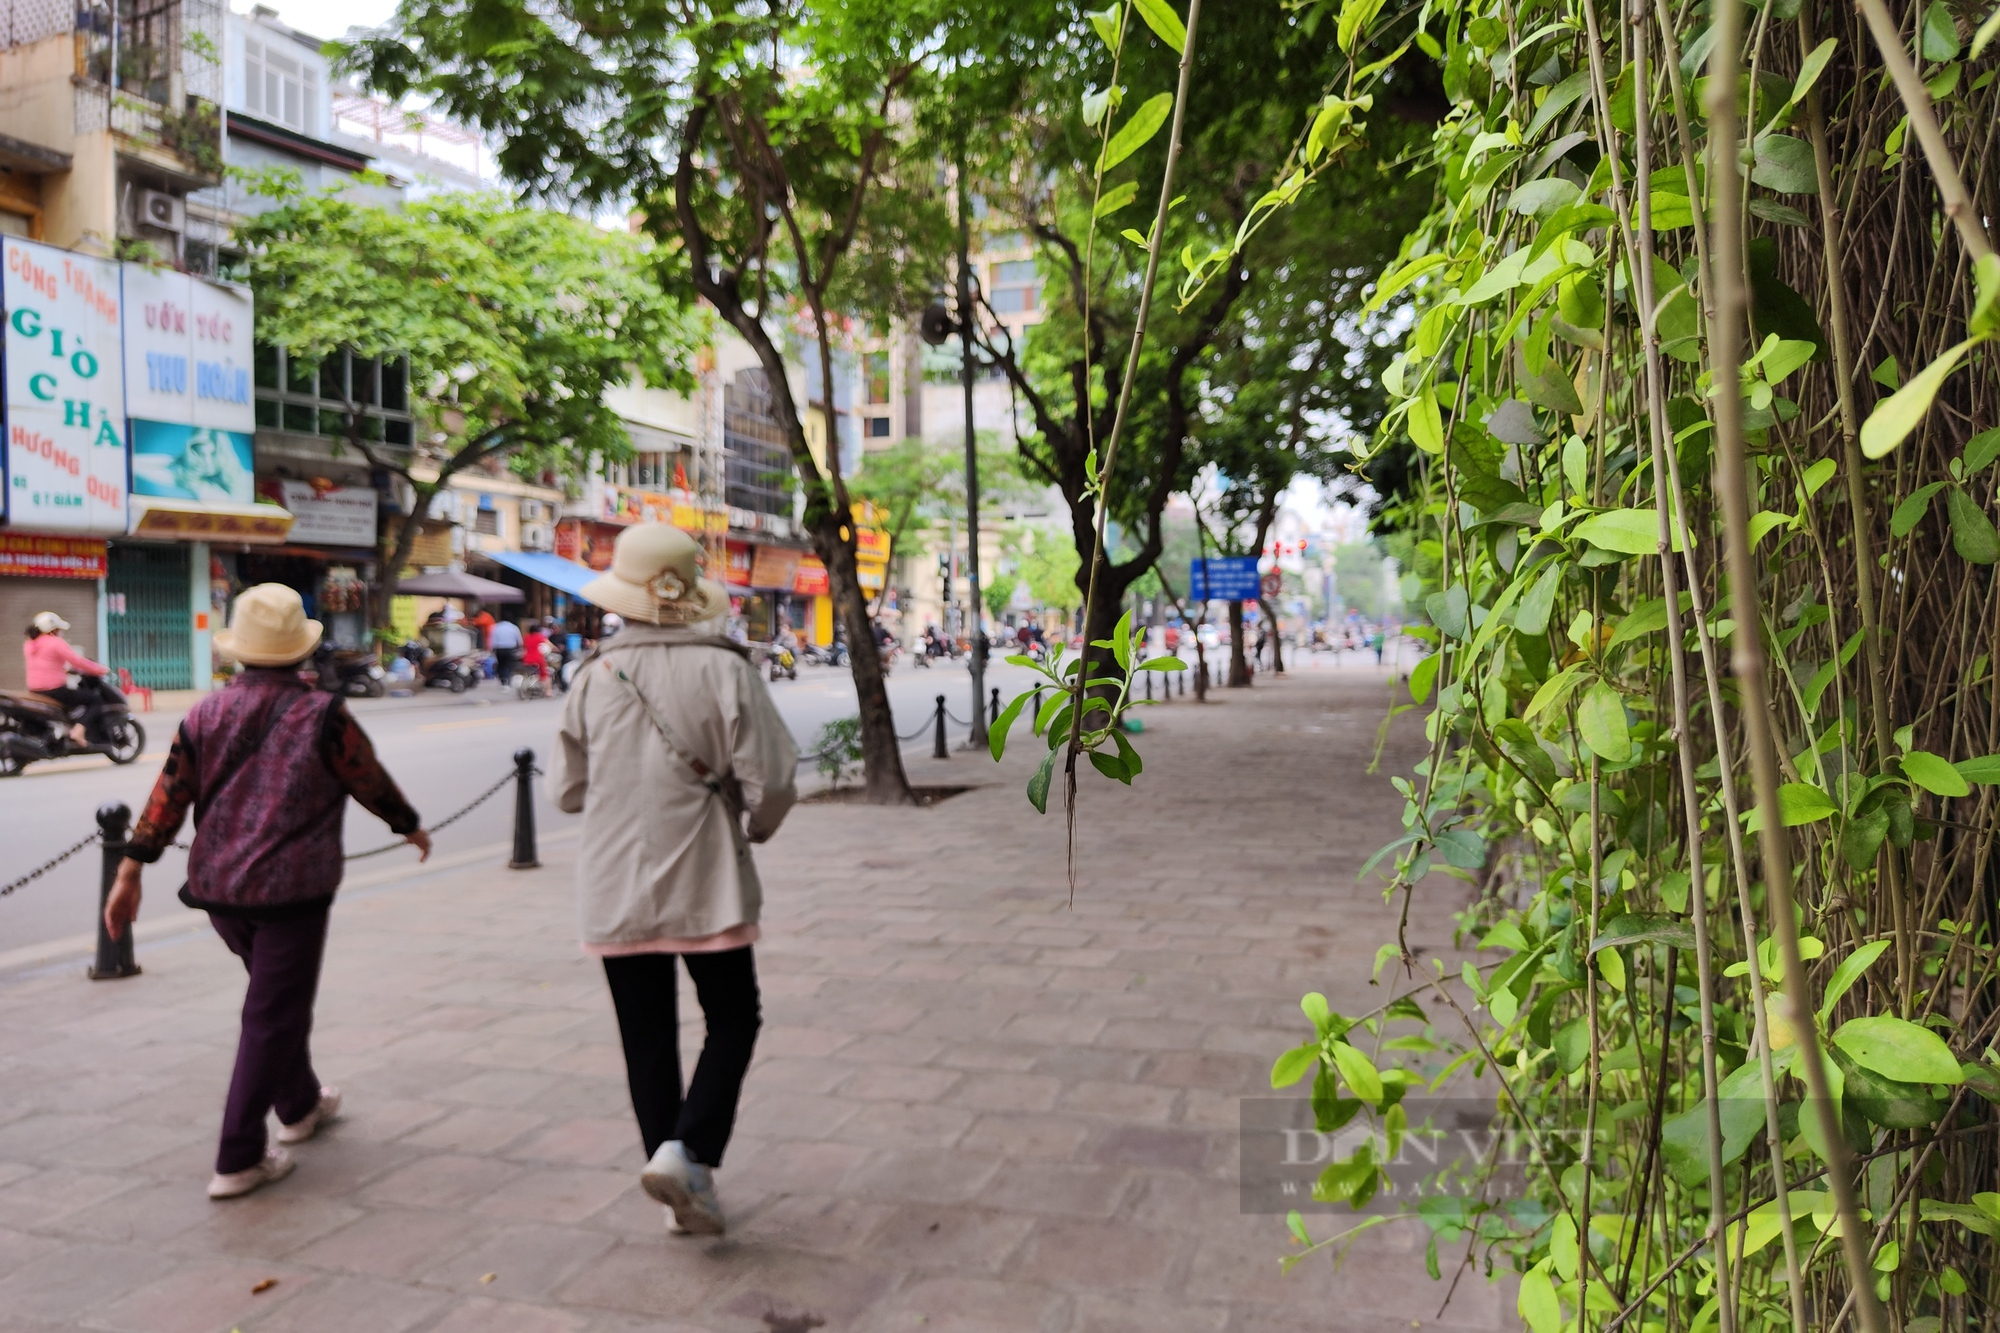 Phố Văn Miếu – Quốc Tử Giám trong đề án xây dựng phố đi bộ mới ở Hà Nội - Ảnh 8.